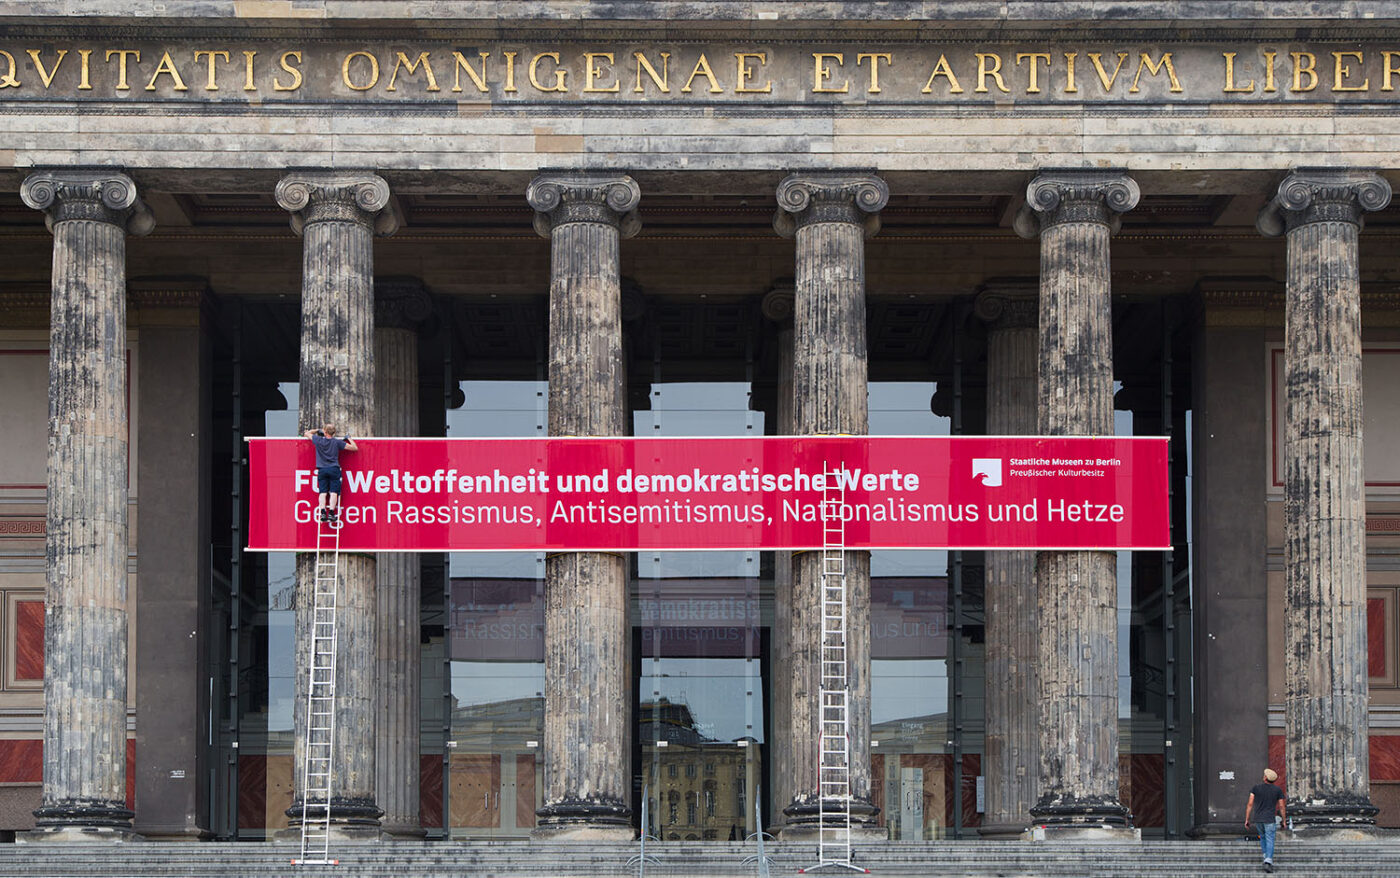 Im Juni wurden die Stufen des Alten Museums wiederholt für Kundgebungen genutzt, die unter anderem antisemitische Verschwörungsmythen verbreiteten und mit den Werten der Staatlichen Museen zu Berlin nicht vereinbar waren. Unter Maßgabe der Meinungs- und Versammlungsfreiheit konnten die Kundgebungen nicht verhindert werden – als Reaktion darauf positionierten sich die Museen jedoch mit einem unmissverständlichen Banner am Haus.